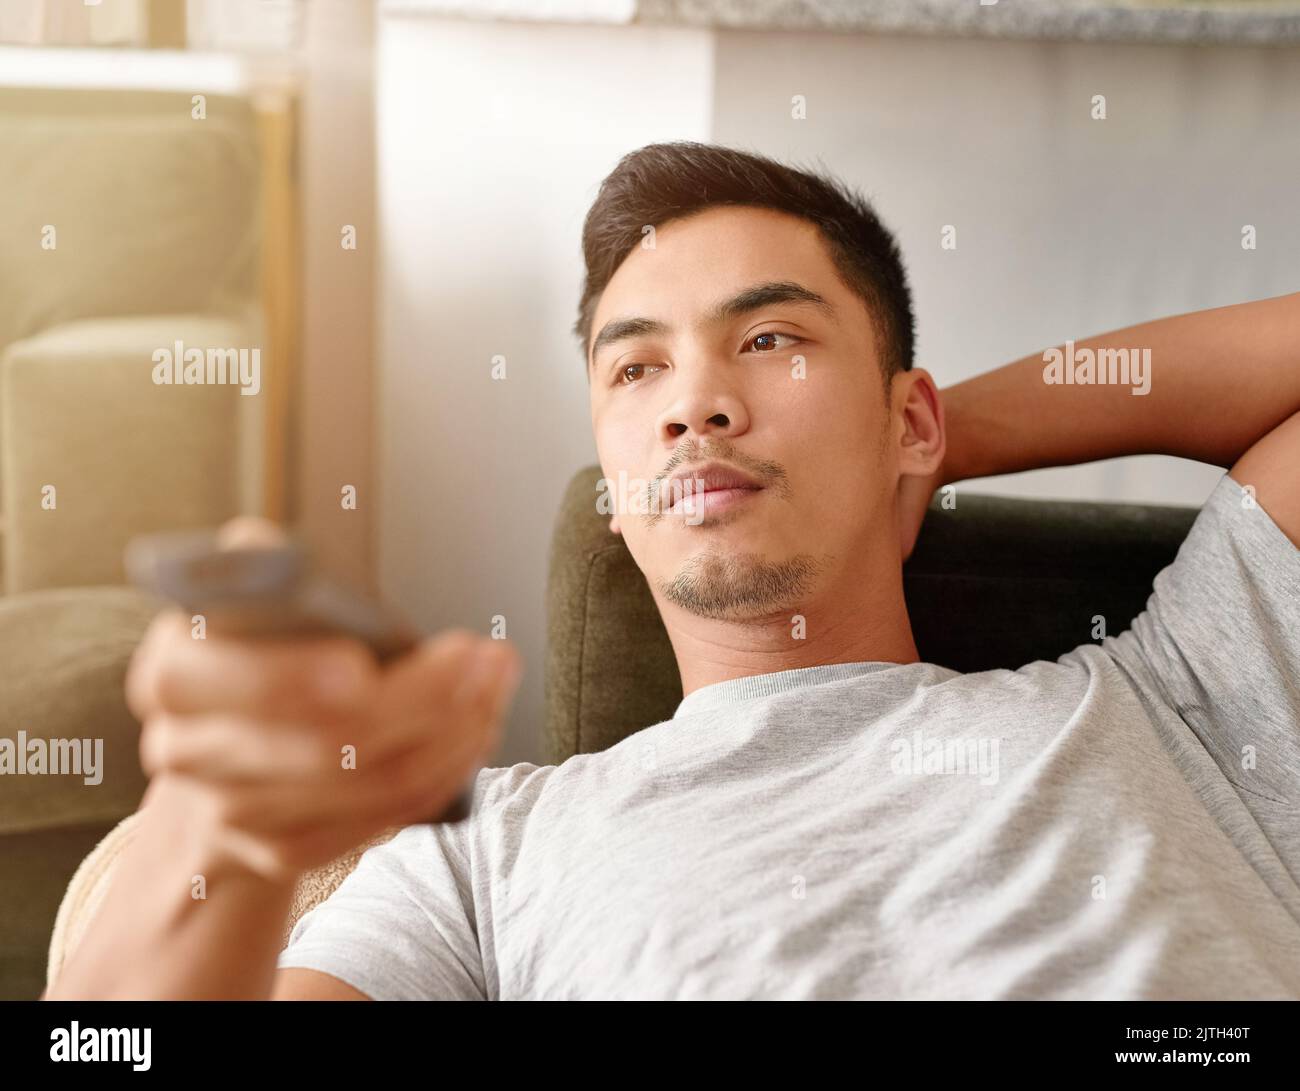 Samstags sind seine Couch Potato Tage. Ein junger Mann mit einer Fernbedienung, um den Kanal auf seinem Fernseher zu ändern, während er auf der Couch liegt. Stockfoto